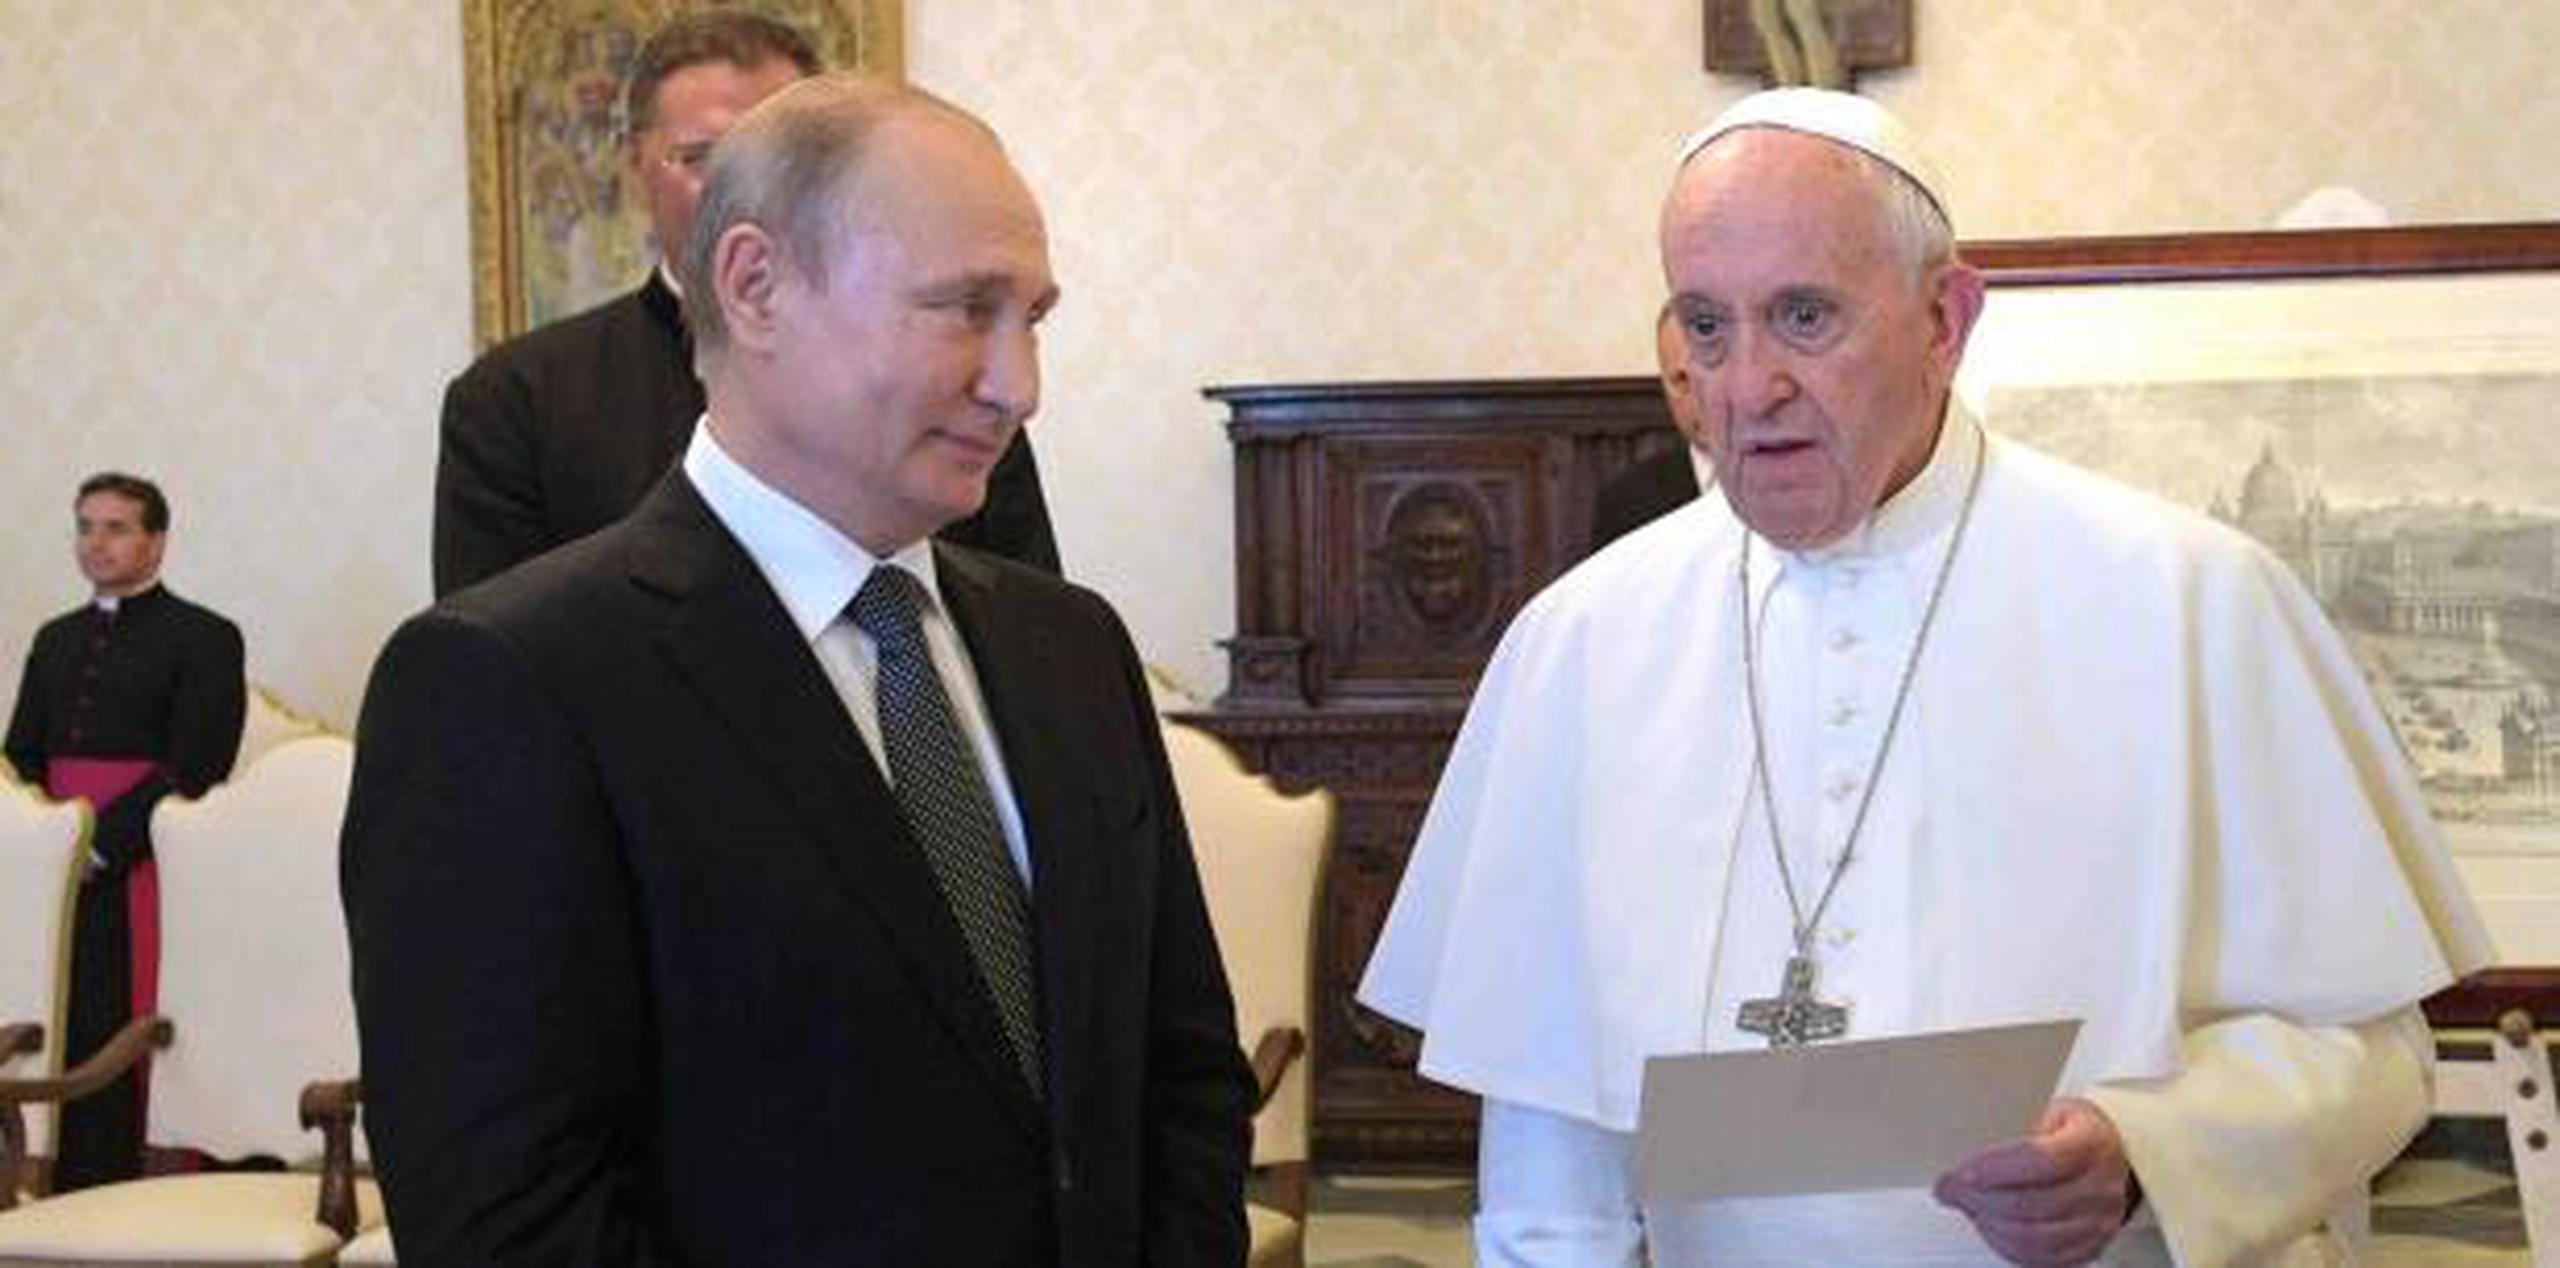 Algunos observadores creen que la visita podría ser un preludio a una visita papal a Rusia. Ningún papa ha visitado Rusia. (AP)